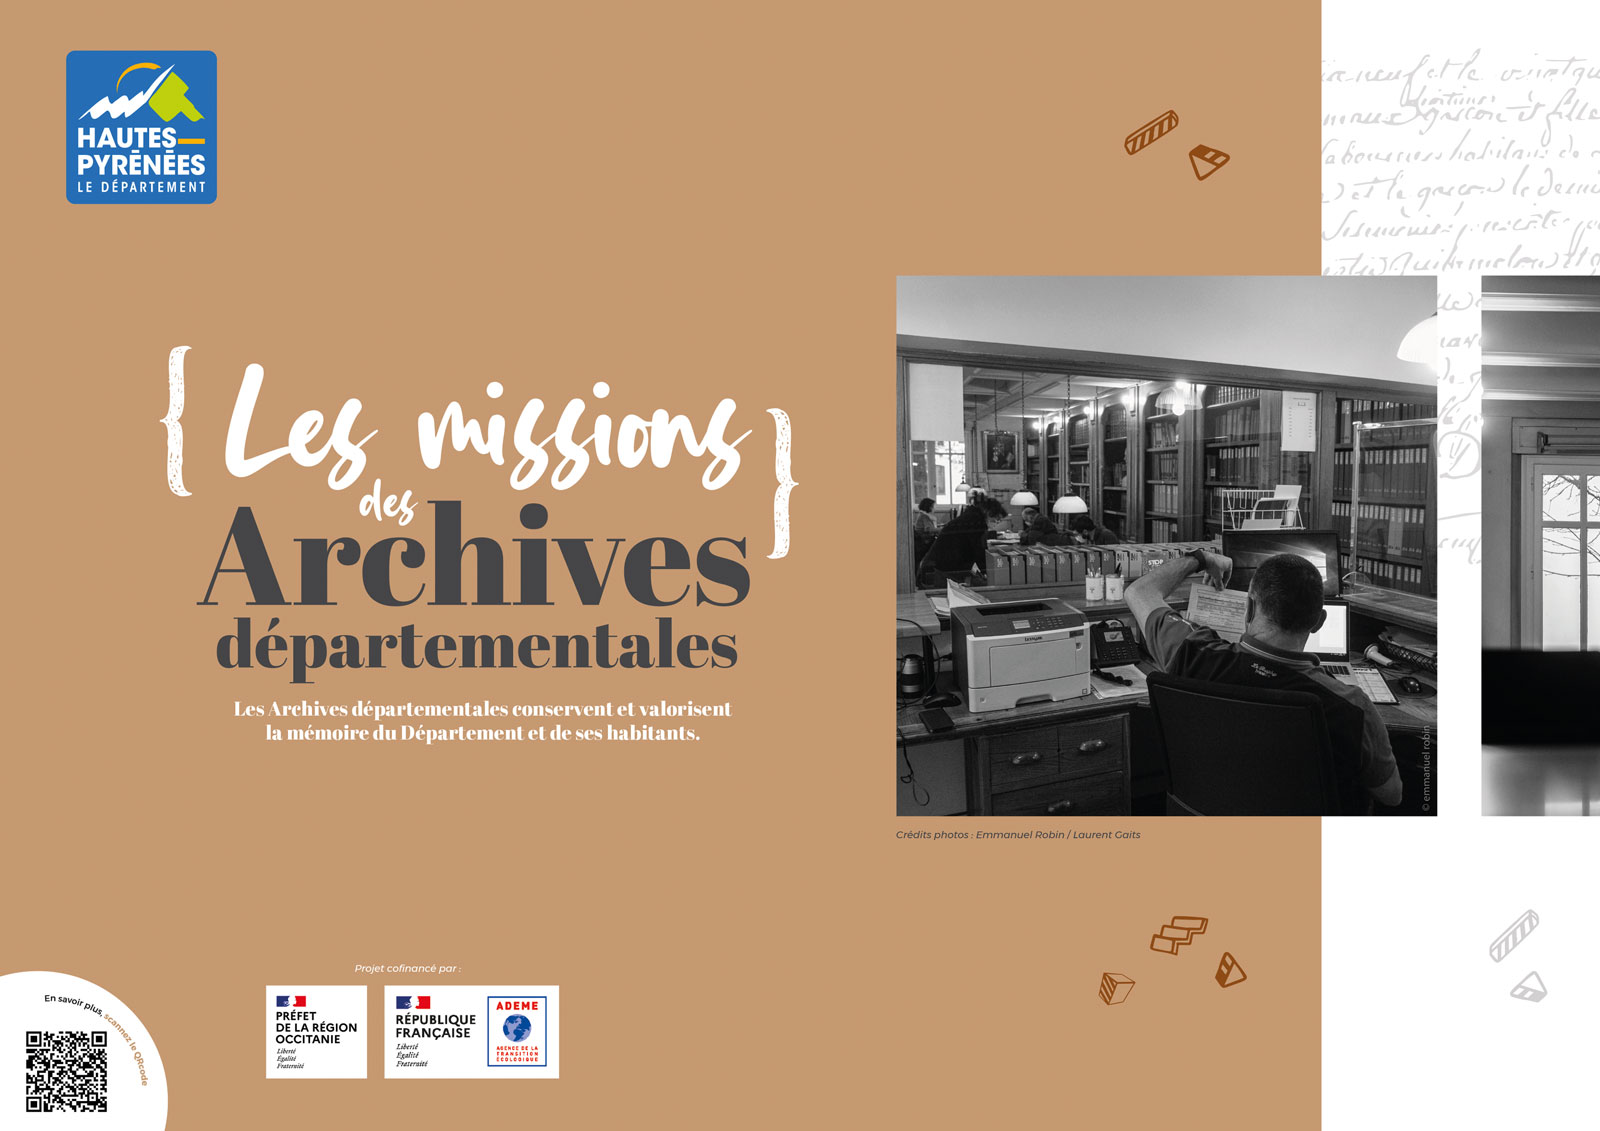 Le Département des Hautes-Pyrénées à confié à l'agence So'Happy, la conception et la création d'une communication "chantier" pour le futur bâtiment des Archives départementales